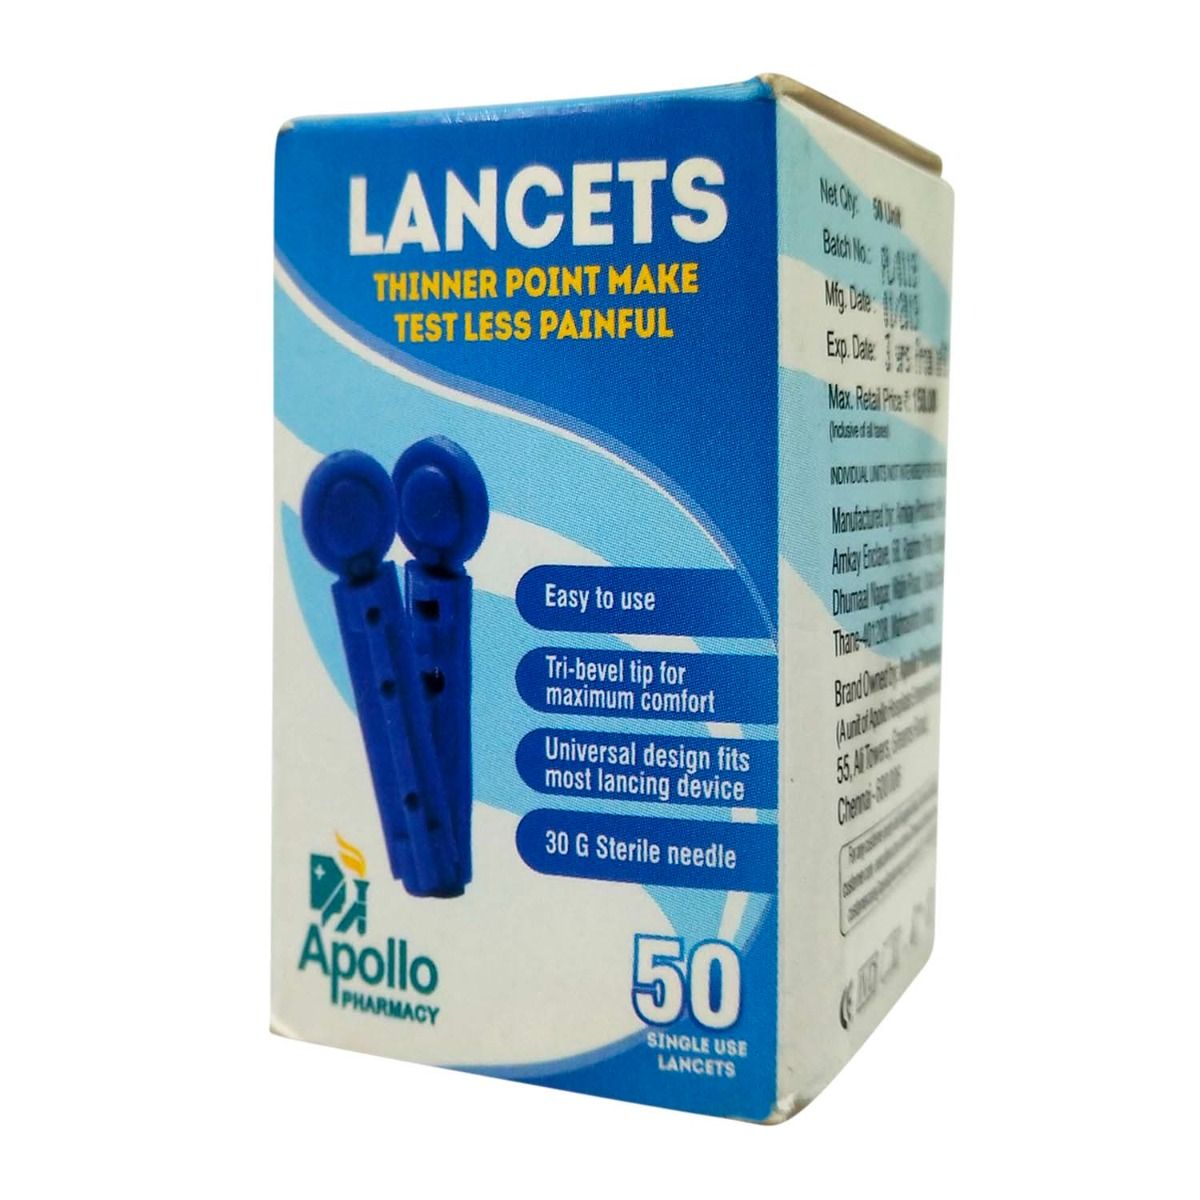 Buy Apollo Pharmacy Lancets, 50 Count Online